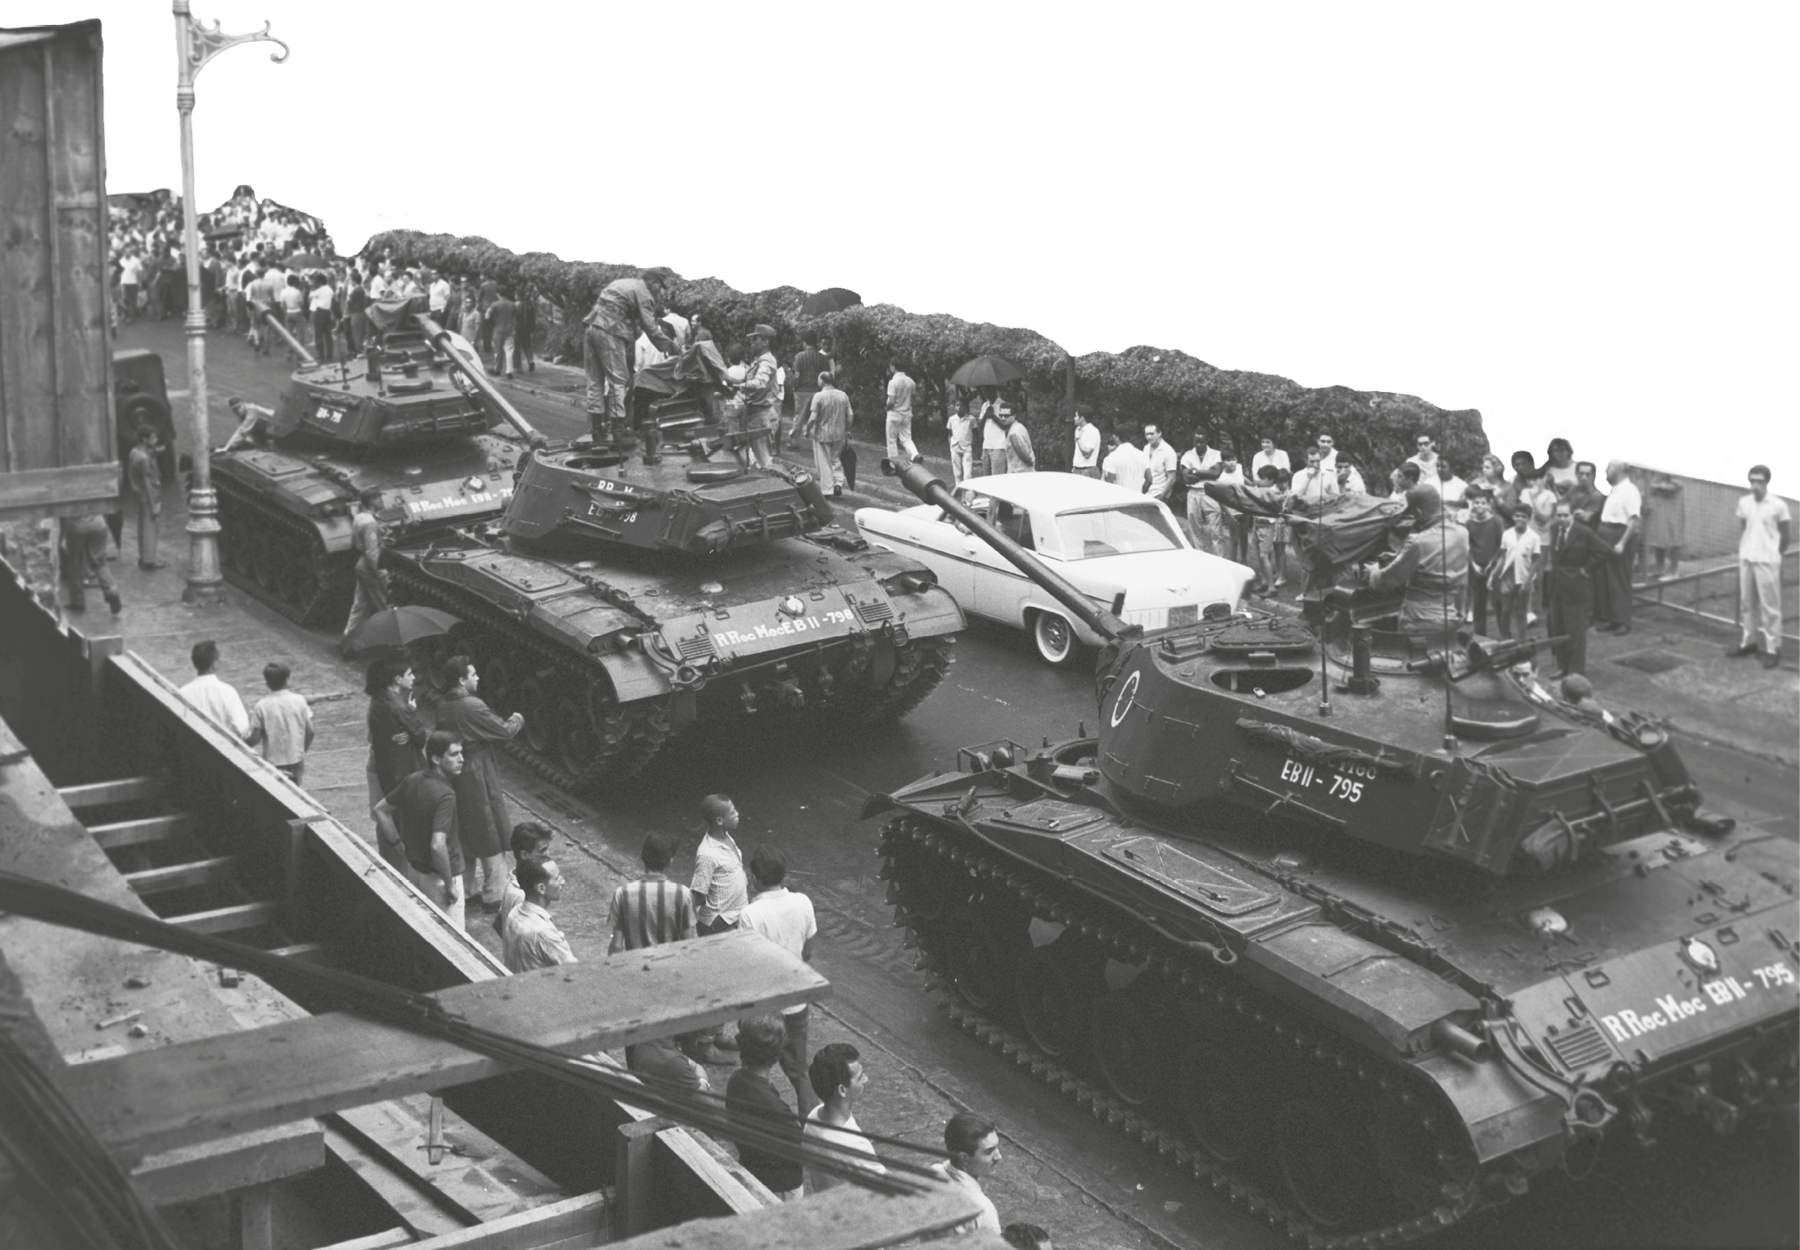 Fotografia em preto e branco. Tanques de guerra passando em uma avenida em meio a pessoas nas calçadas acompanhando o ato.